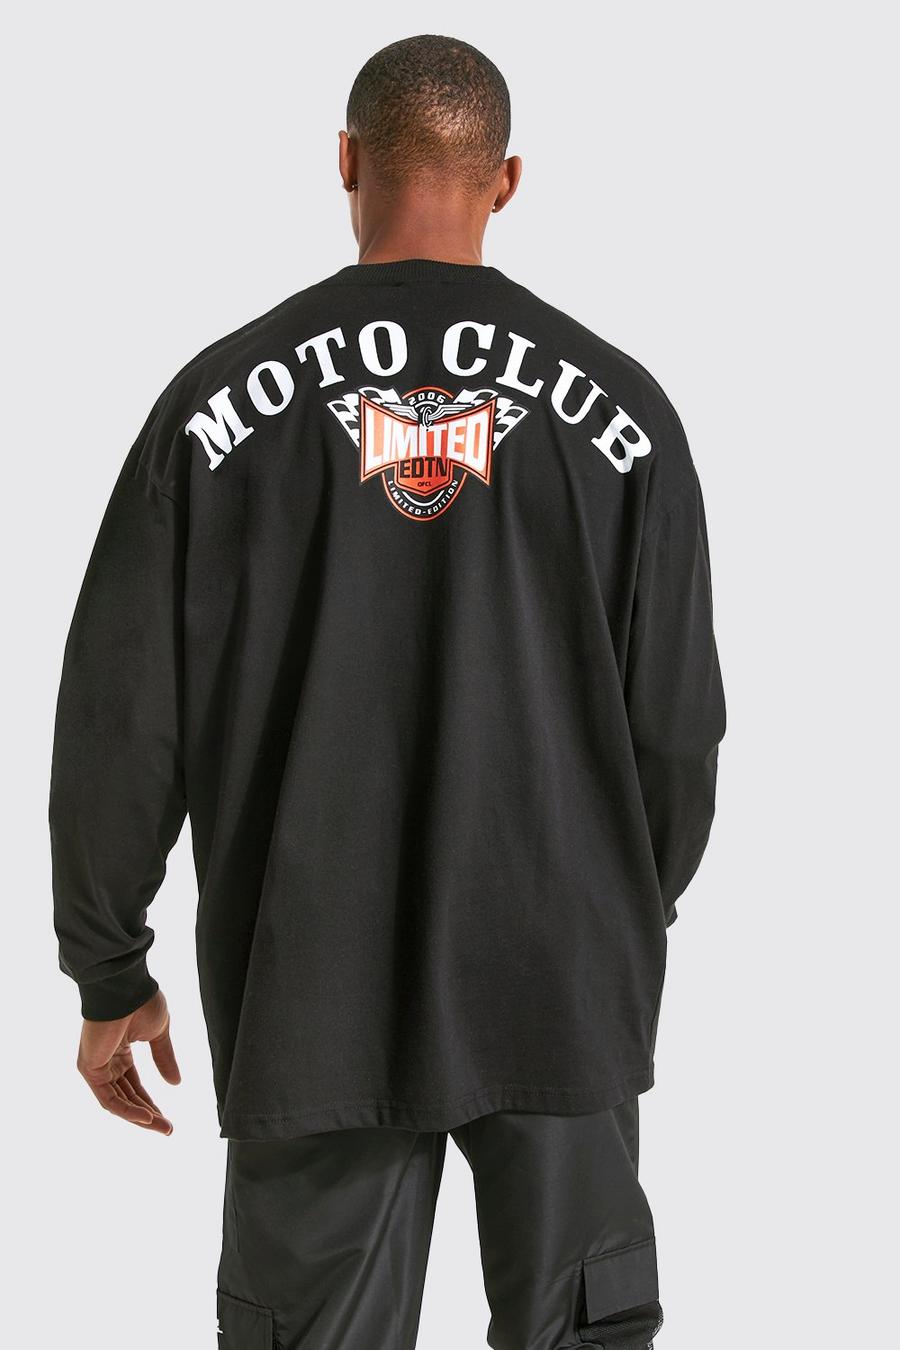 שחור nero טישרט אוברסייז עם כיתוב Moto Club ושרוולים ארוכים